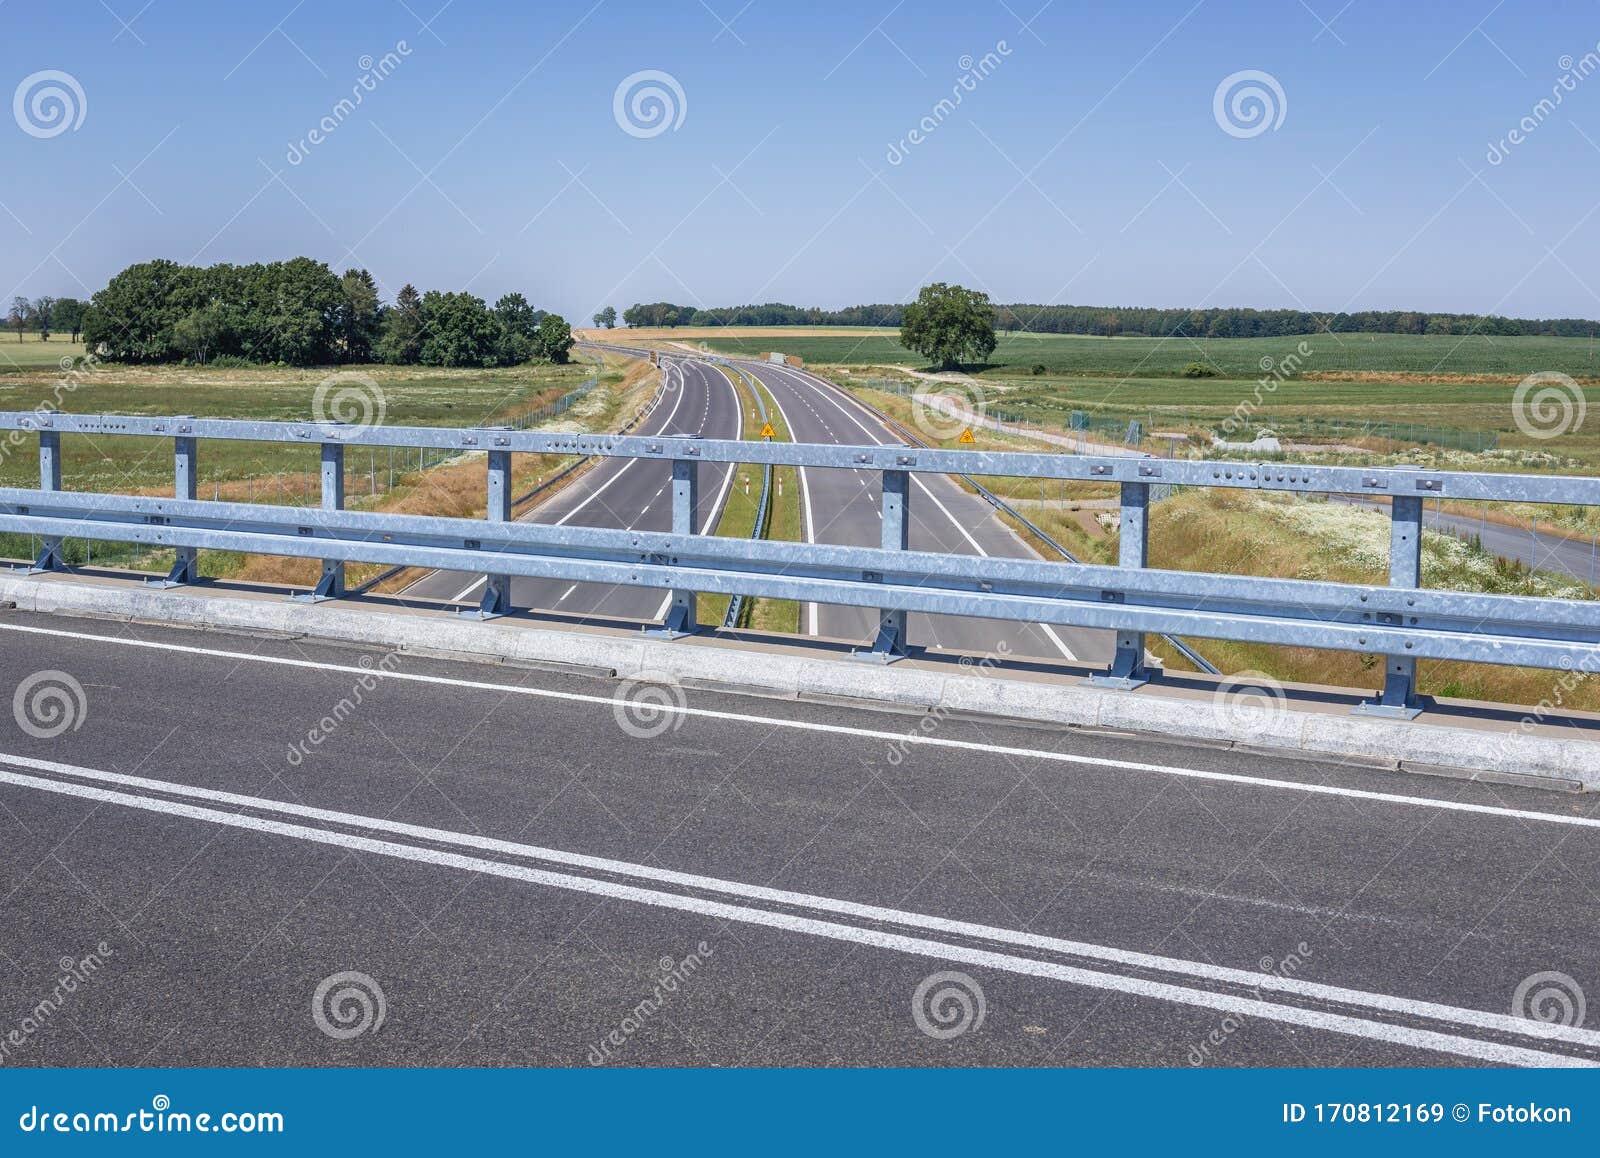 expressway in poland